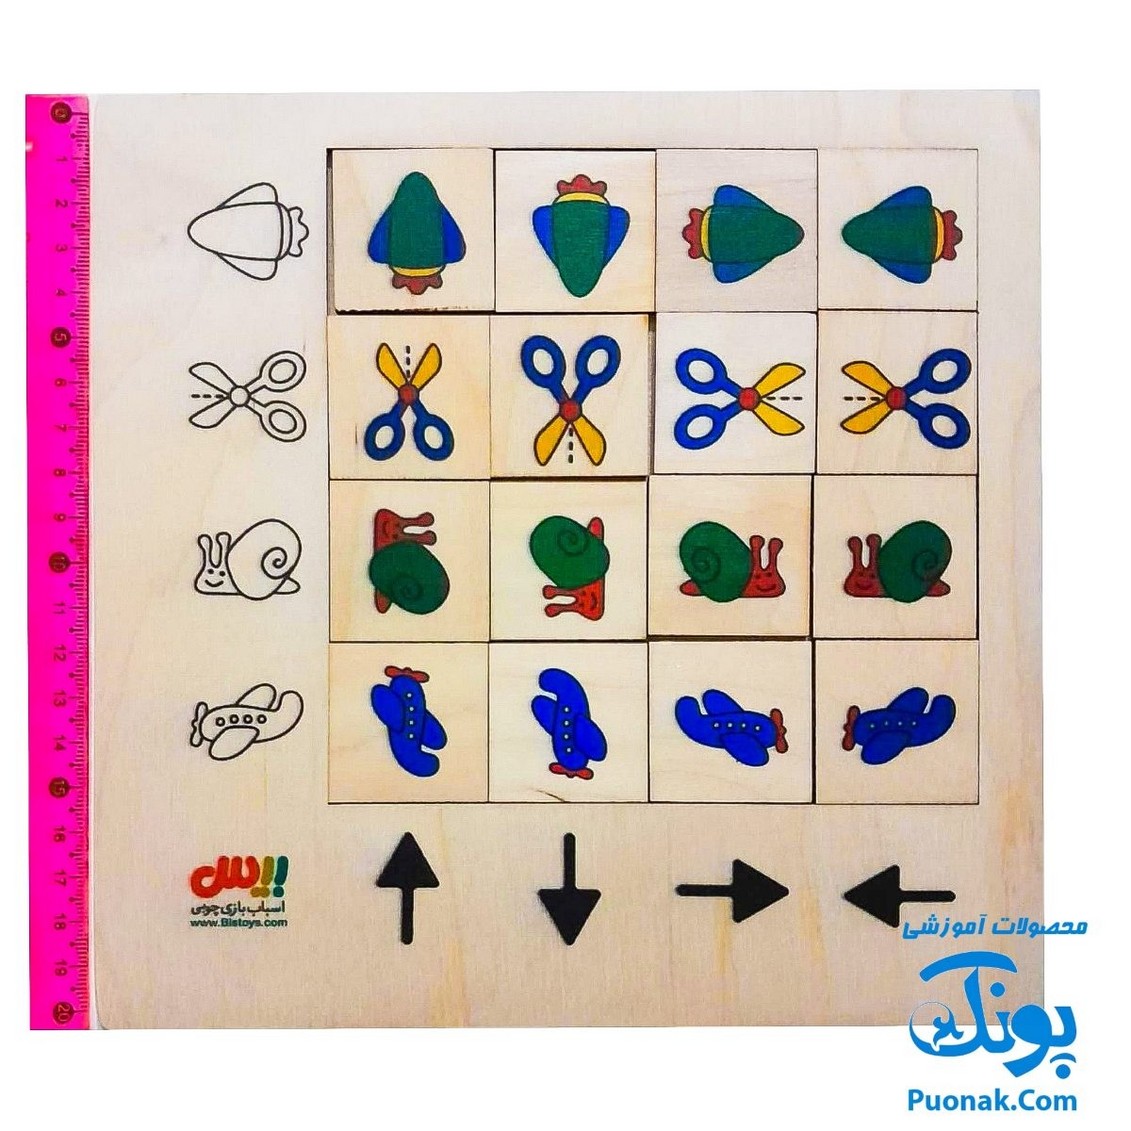 جورچین چوبی آموزش مفاهیم رنگ ها و شکل ها چپ و راست، بالا و پایین جهت ها به کودکان مدل بیس